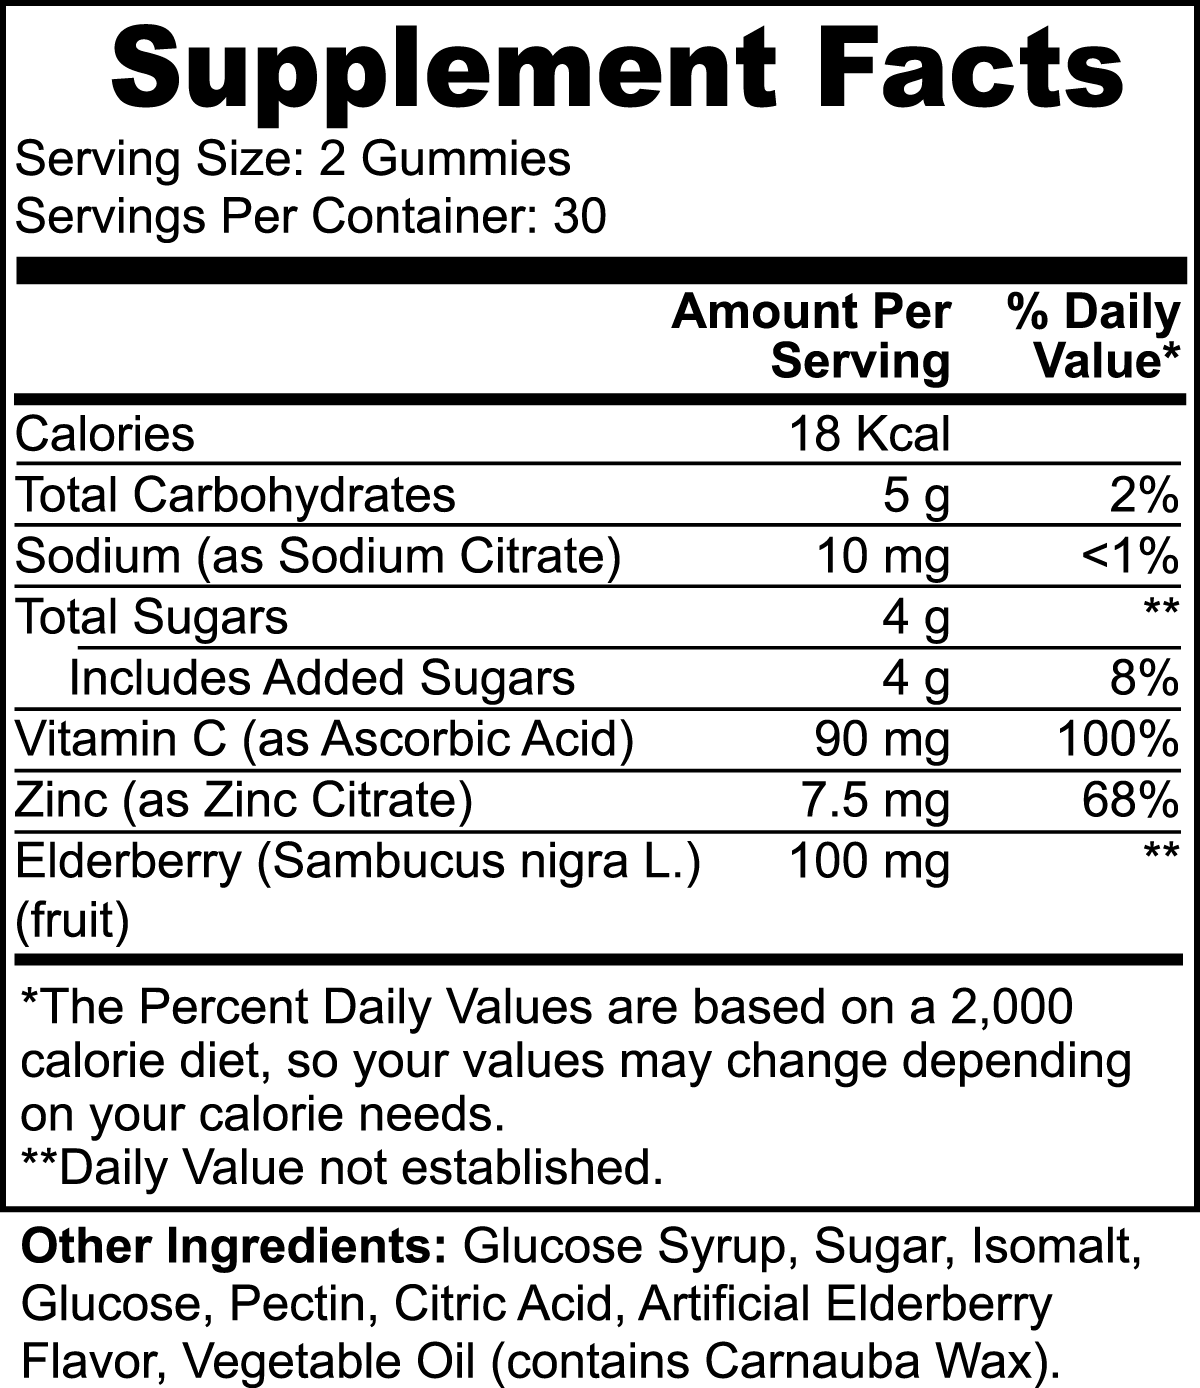 Vitamin C & Elderberry Gummies Supplements Obtain Immune Boost Mineral